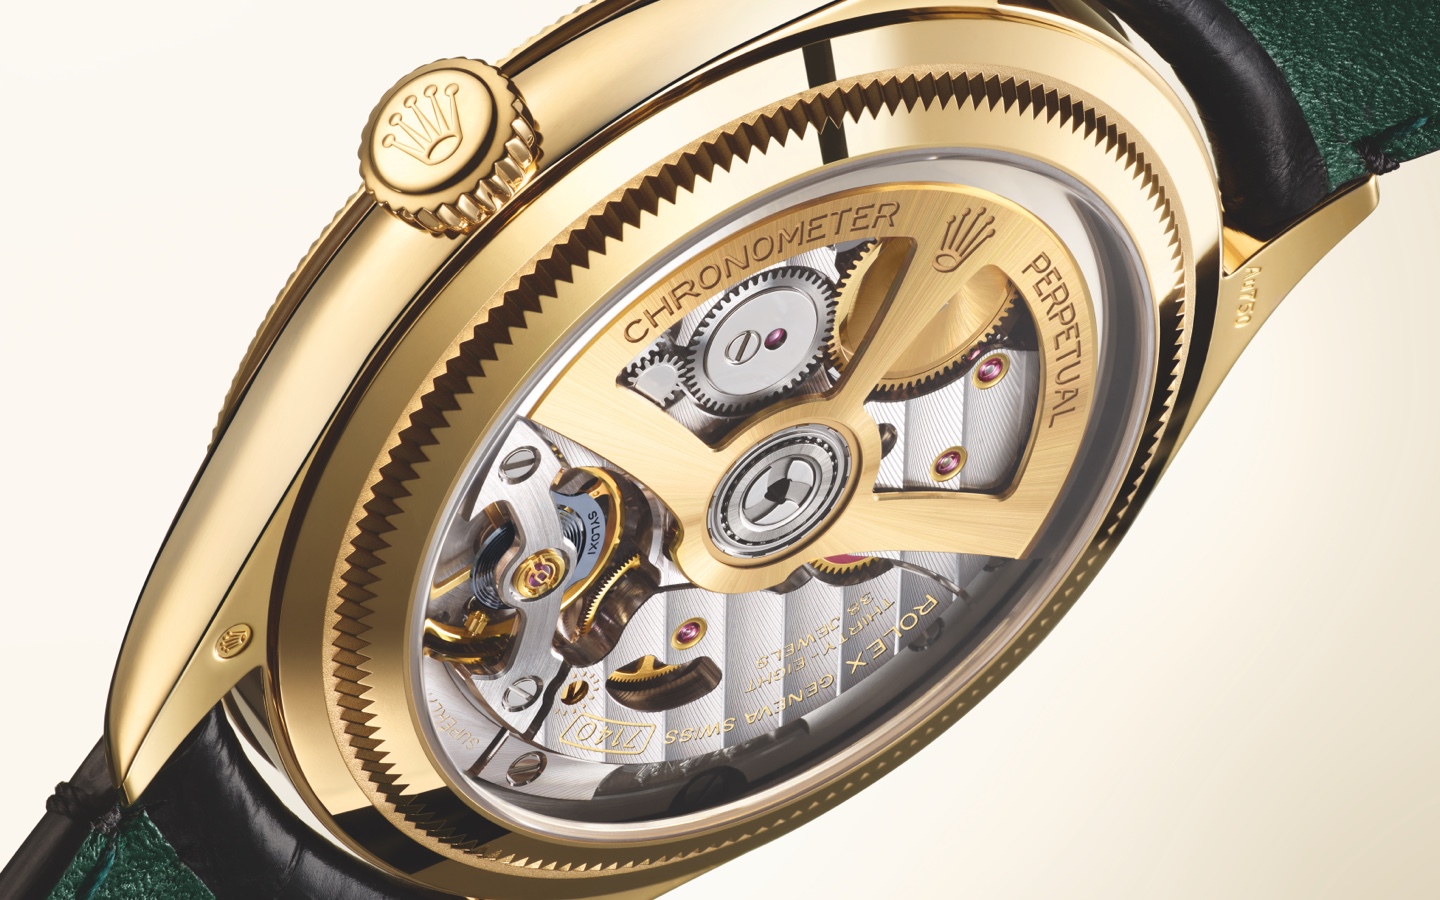 EEl 1908 combina todos los atributos esenciales de un reloj de pulsera